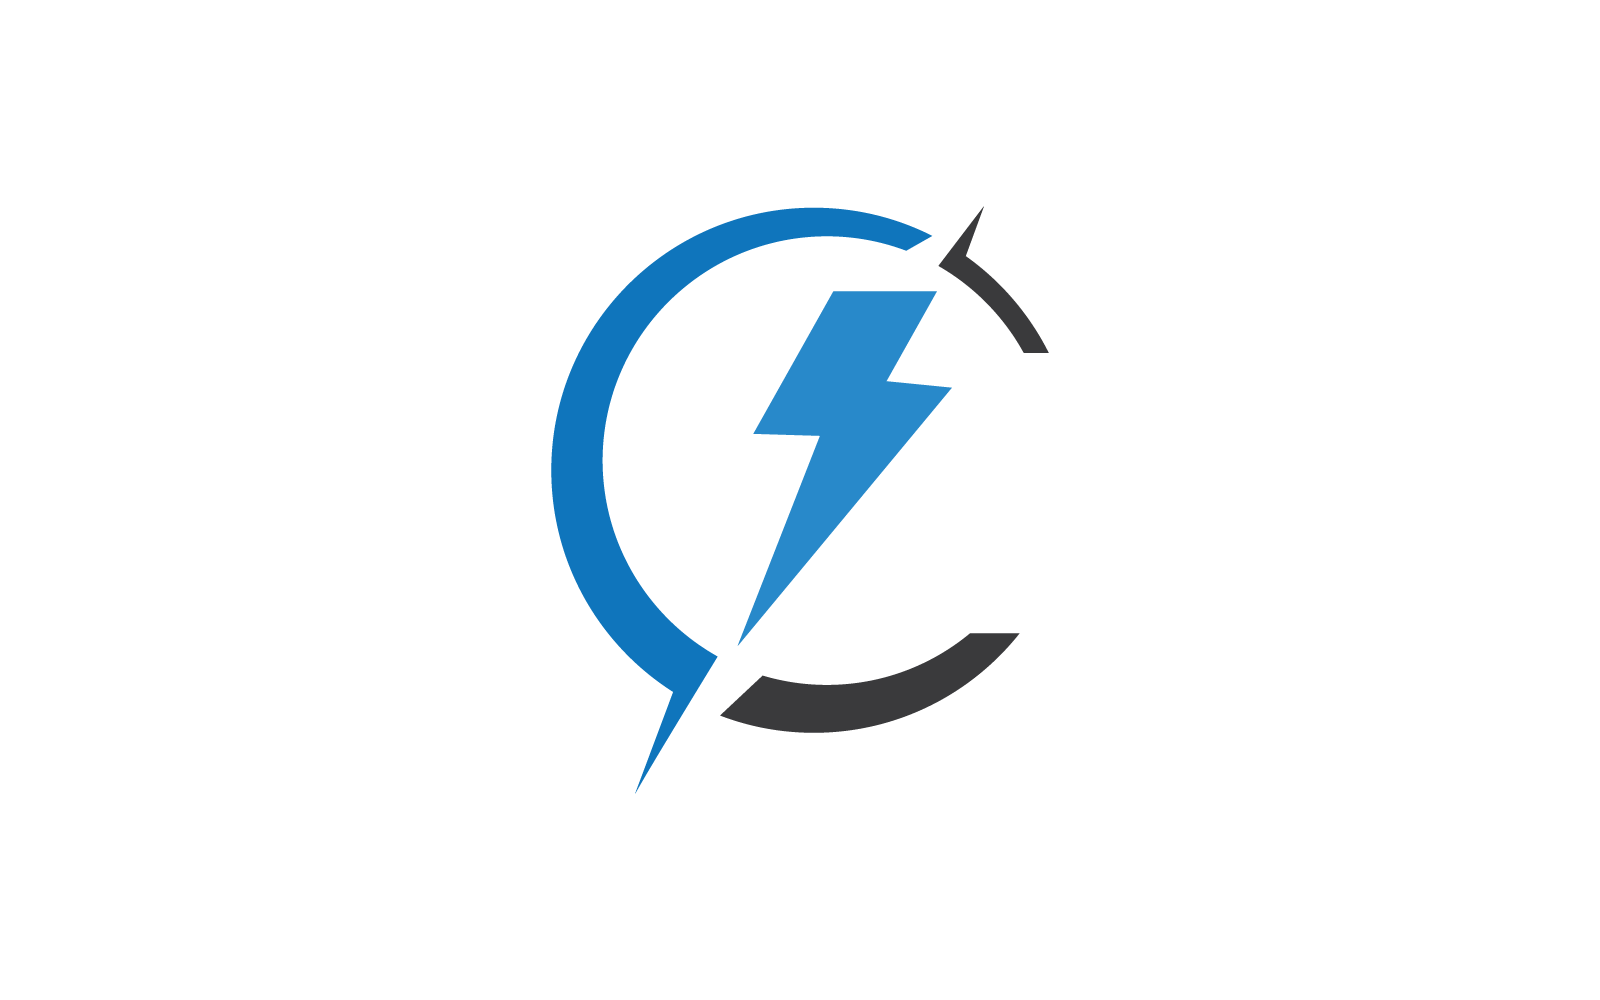 Power lightning power energy logo flat design template